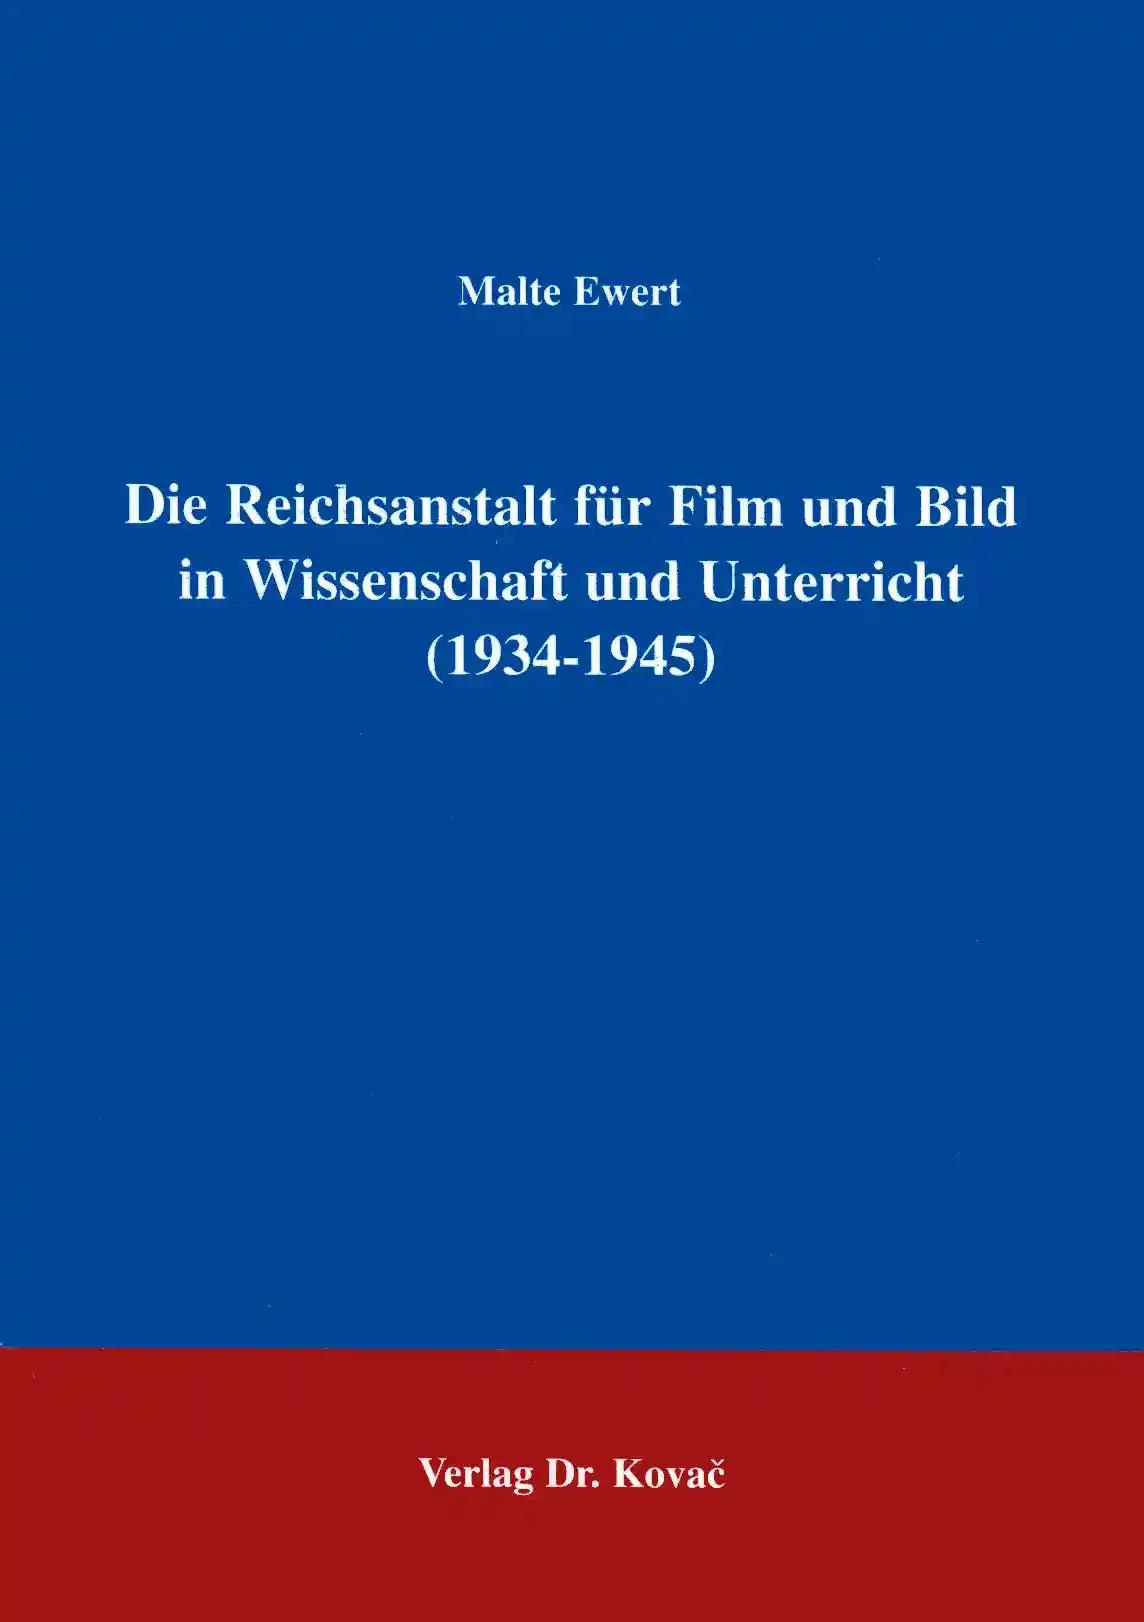 Die Reichsanstalt fÃ¼r Film und Bild in Wissenschaft und Unterricht (1934Â-Â1945), - Malte Ewert